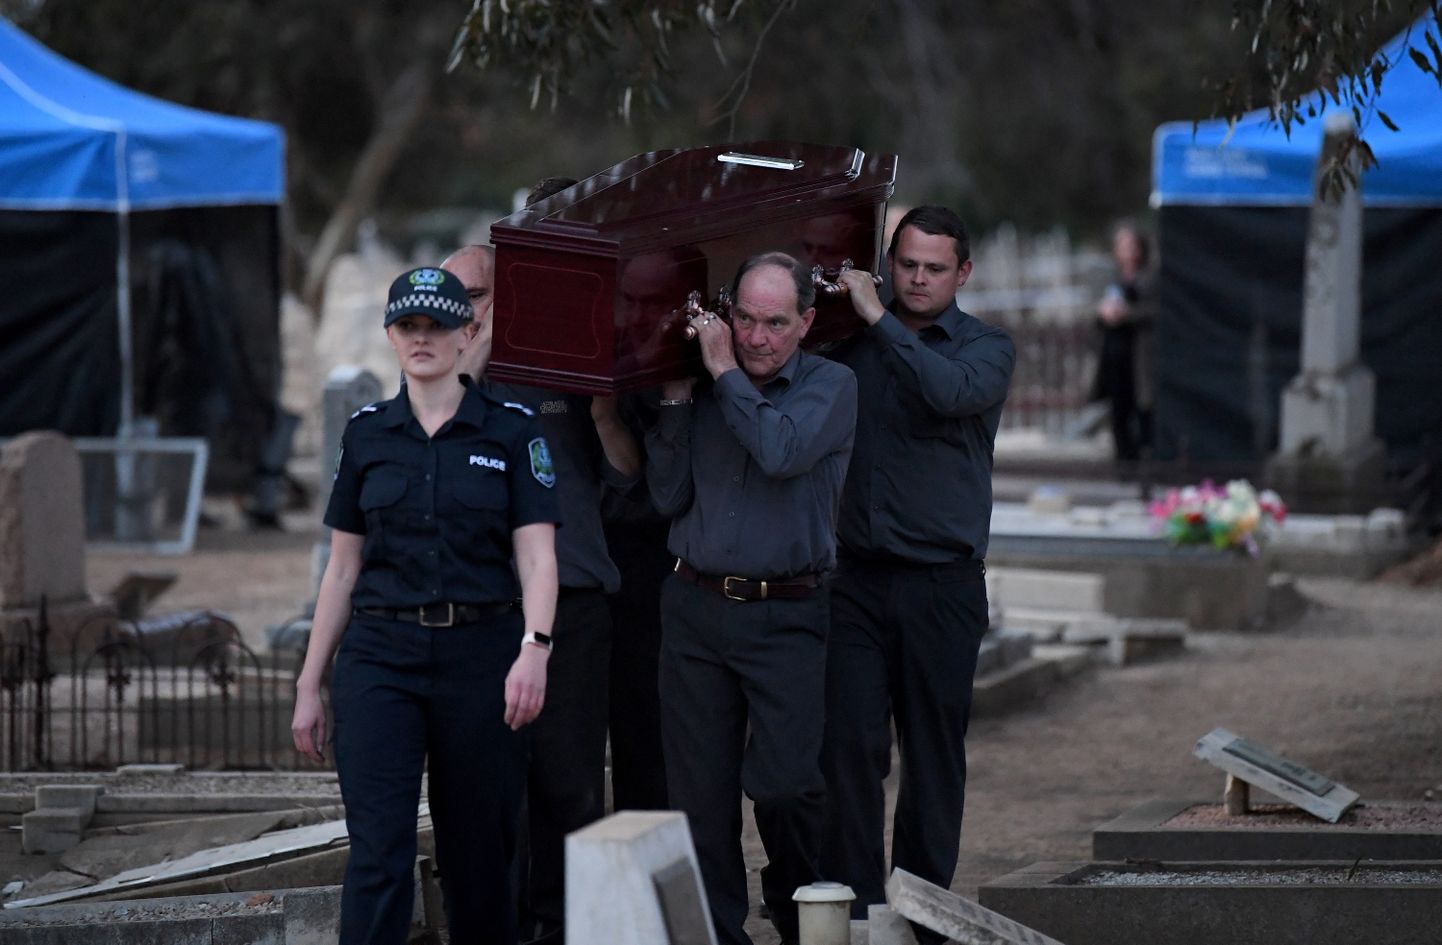 Lõuna-Austraalia politsei kriminalistid ekshumeerisid Adelaide'i West Terrace surnuaiast Somertoni mehe, et ta juhtum lahendad. Pildil kalmistu töötajad kandmas kirstu, milles on Somertoni mees